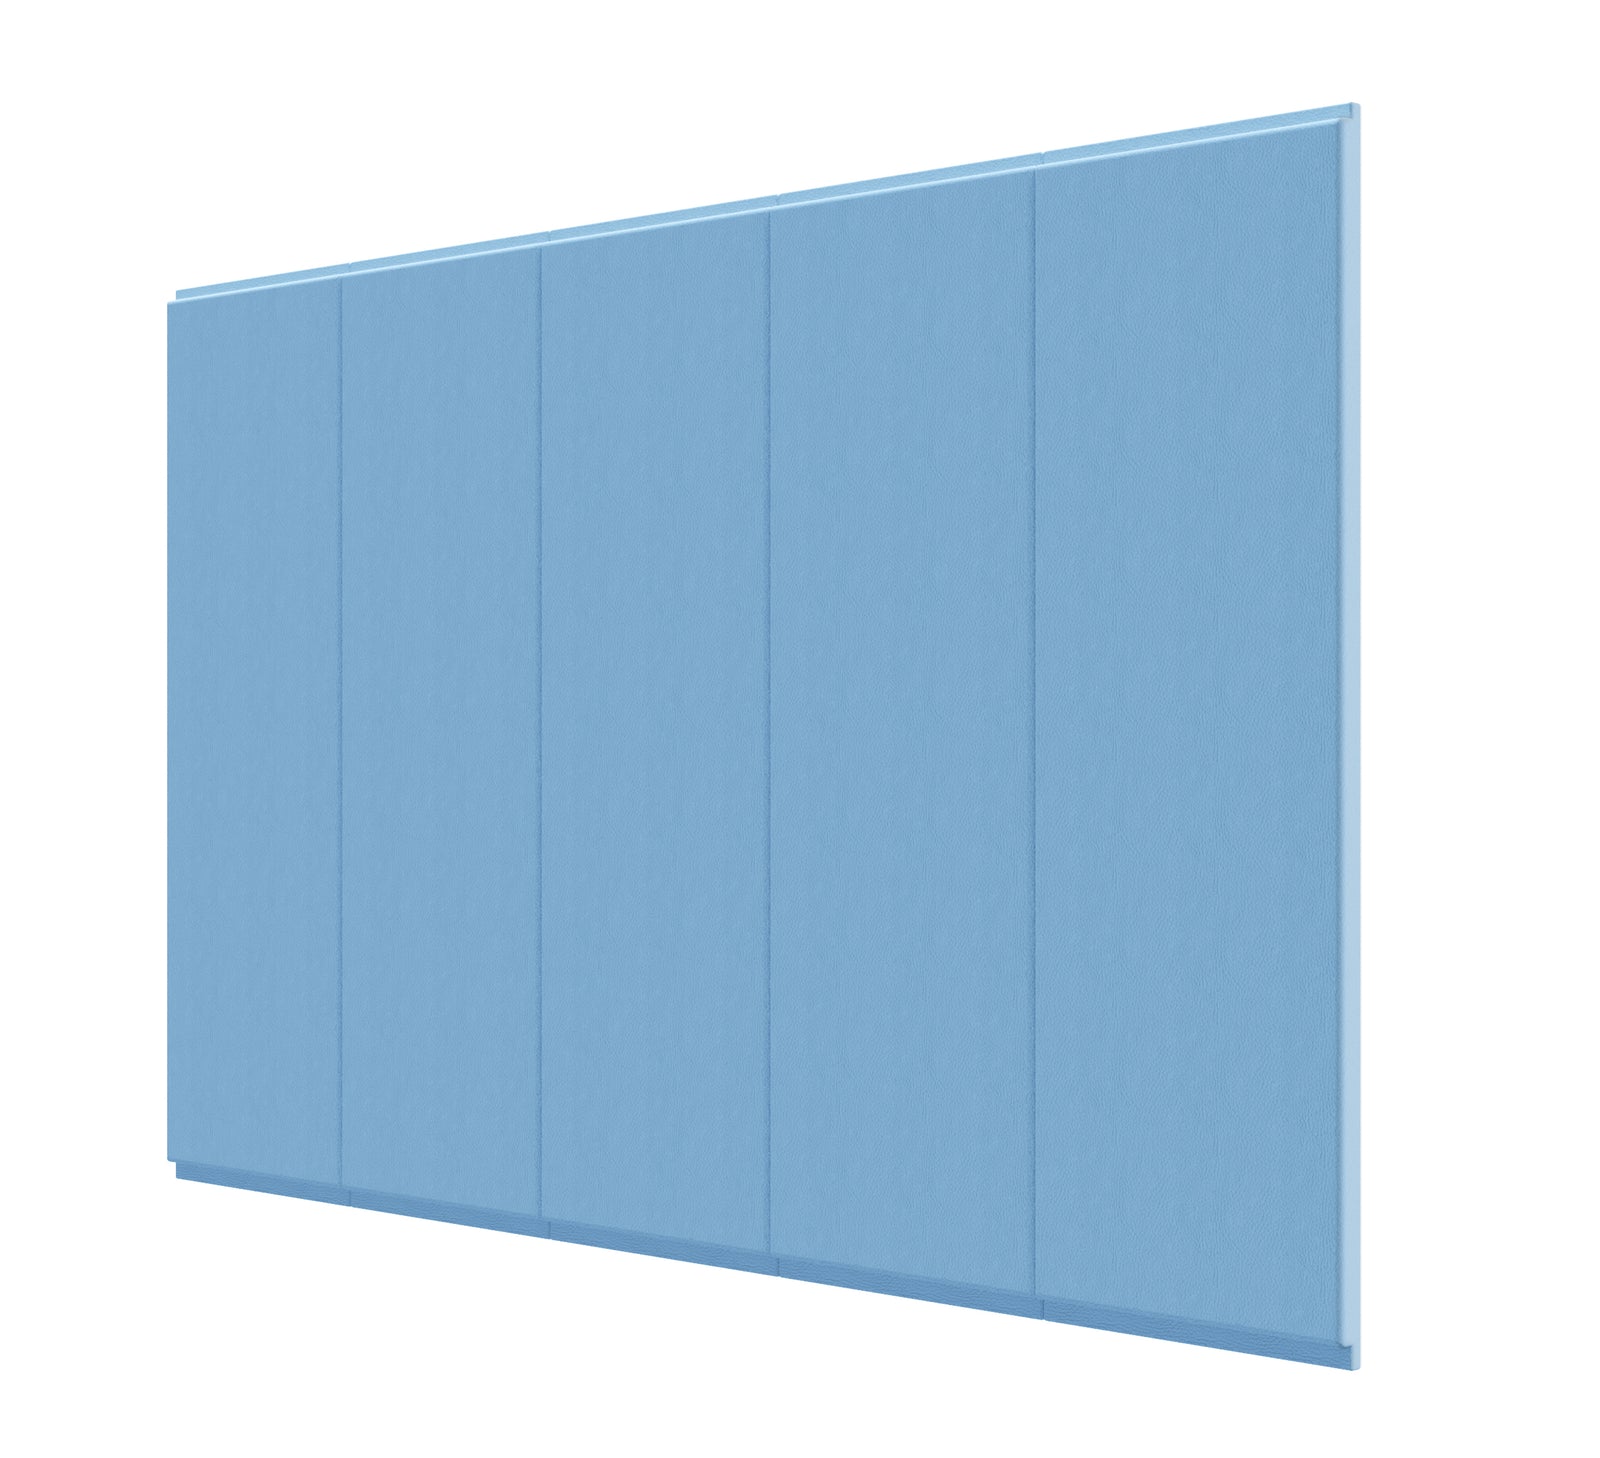 Wall Pads Light Blue